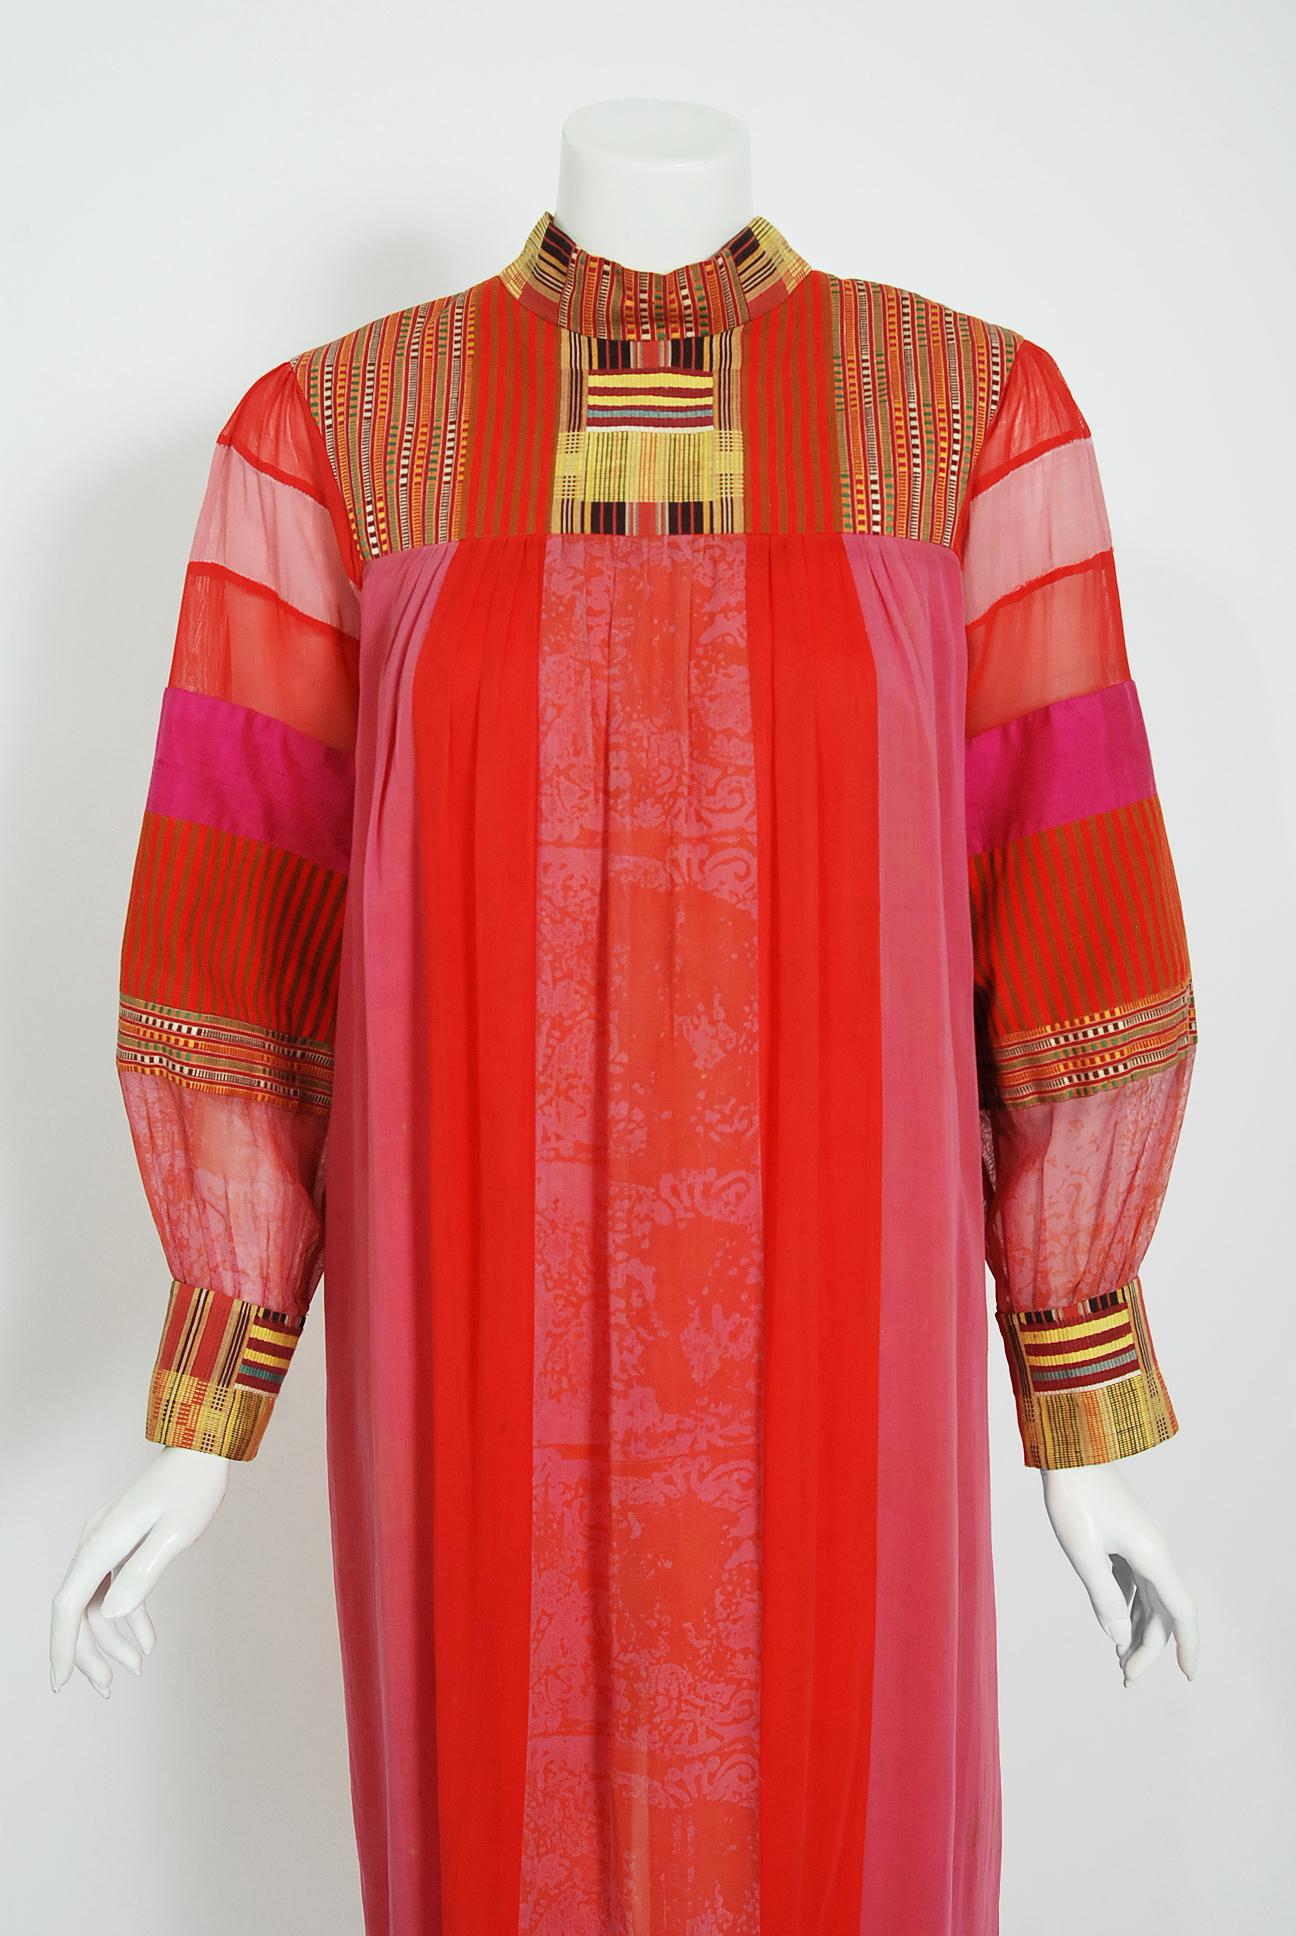 Ein farbenfrohes, besticktes Baumwollkleid von Joann Lopez aus den frühen 1970er Jahren, direkt aus dem Kleiderschrank von Zsa Zsa Gabor. Dieses Kleid stammt aus der Blütezeit der Bohème und wurde in einer Luxusboutique in Los Angeles an Zsa Zsa